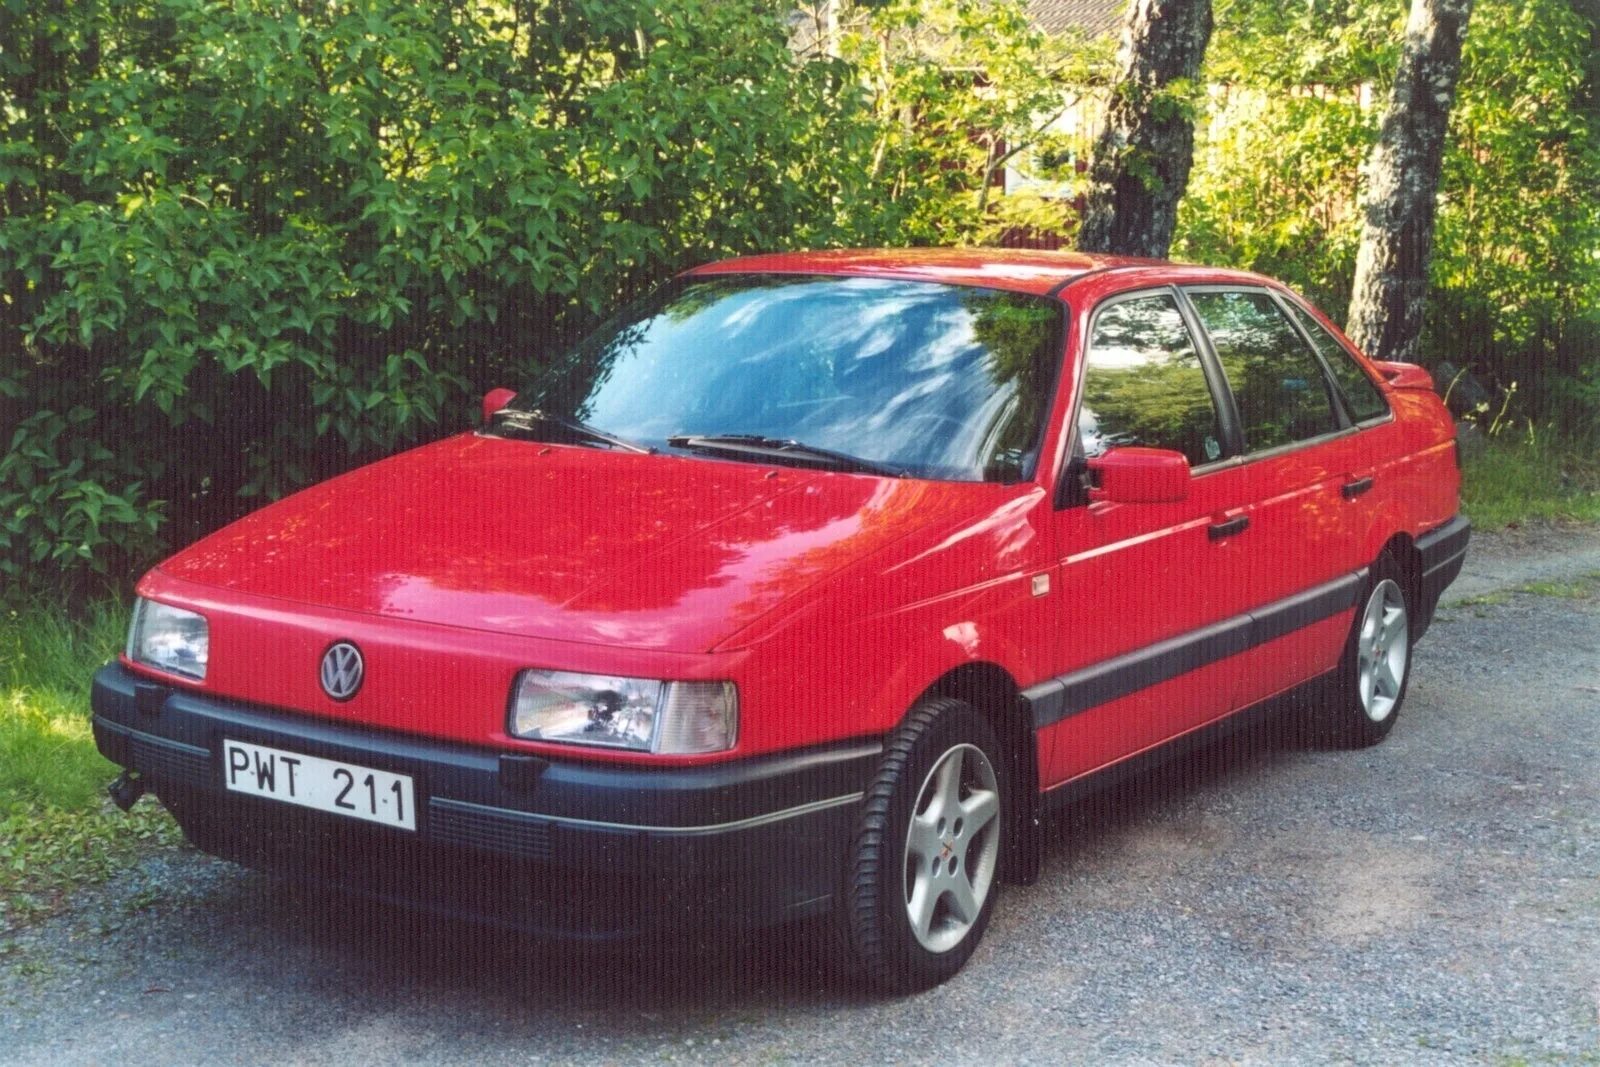 Фольксваген Пассат б3 седан. Фольксваген Пассат б3 красный. VW Passat 1993. Фольксваген Пассат 1993 красный.